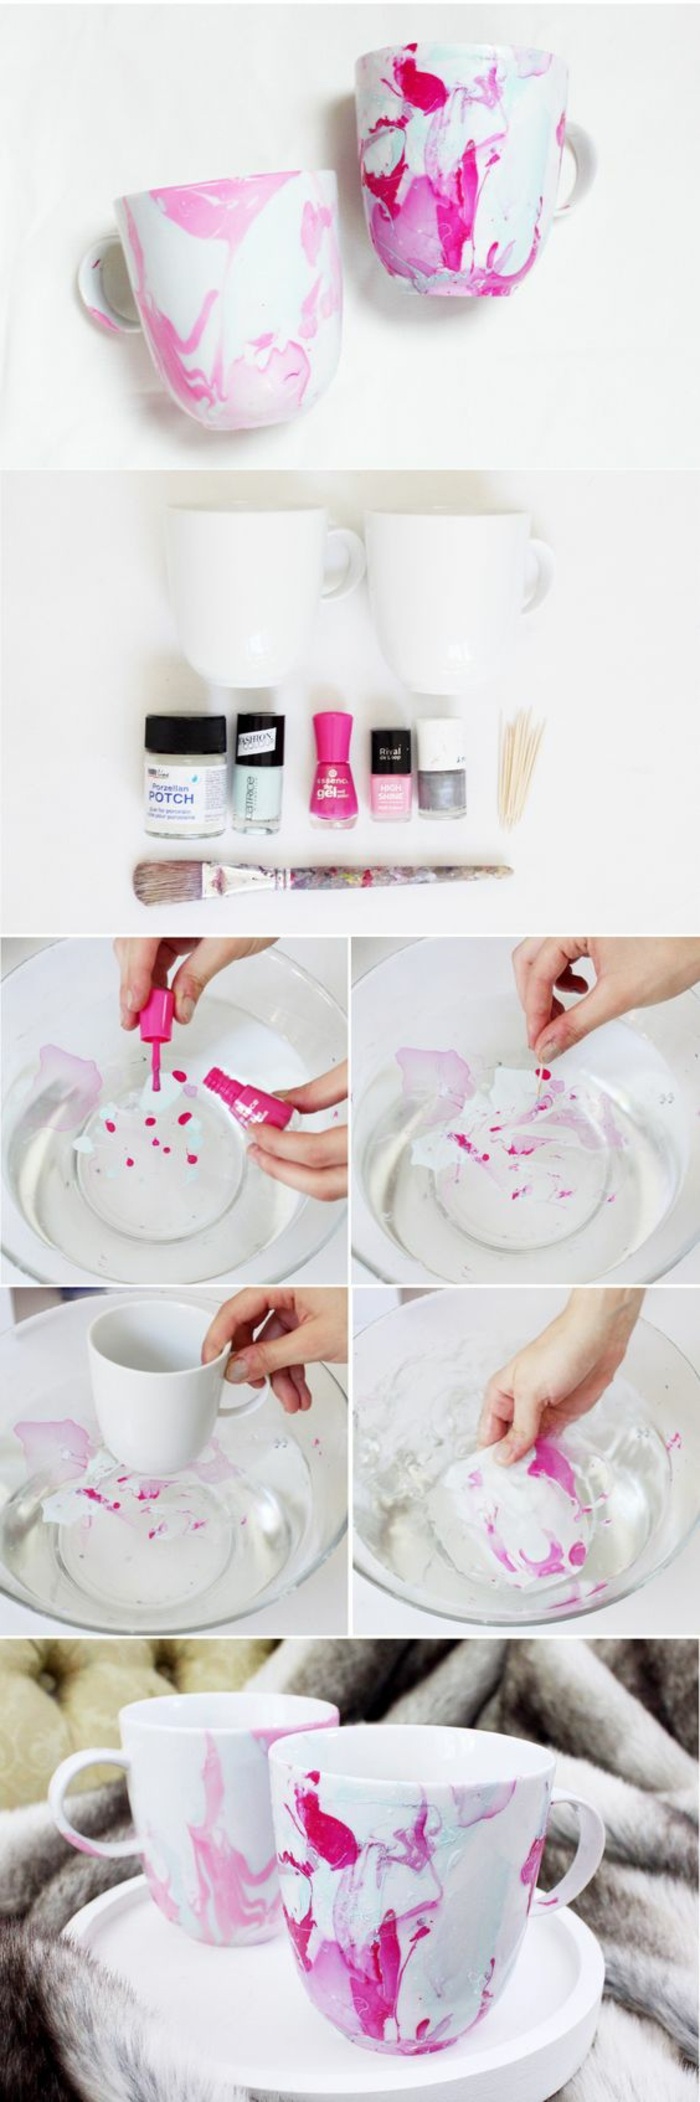 exemple comment décorer un mug blanc avec vernis à ongle, technique déco avec eau et vernis à ongles sur porcelaine